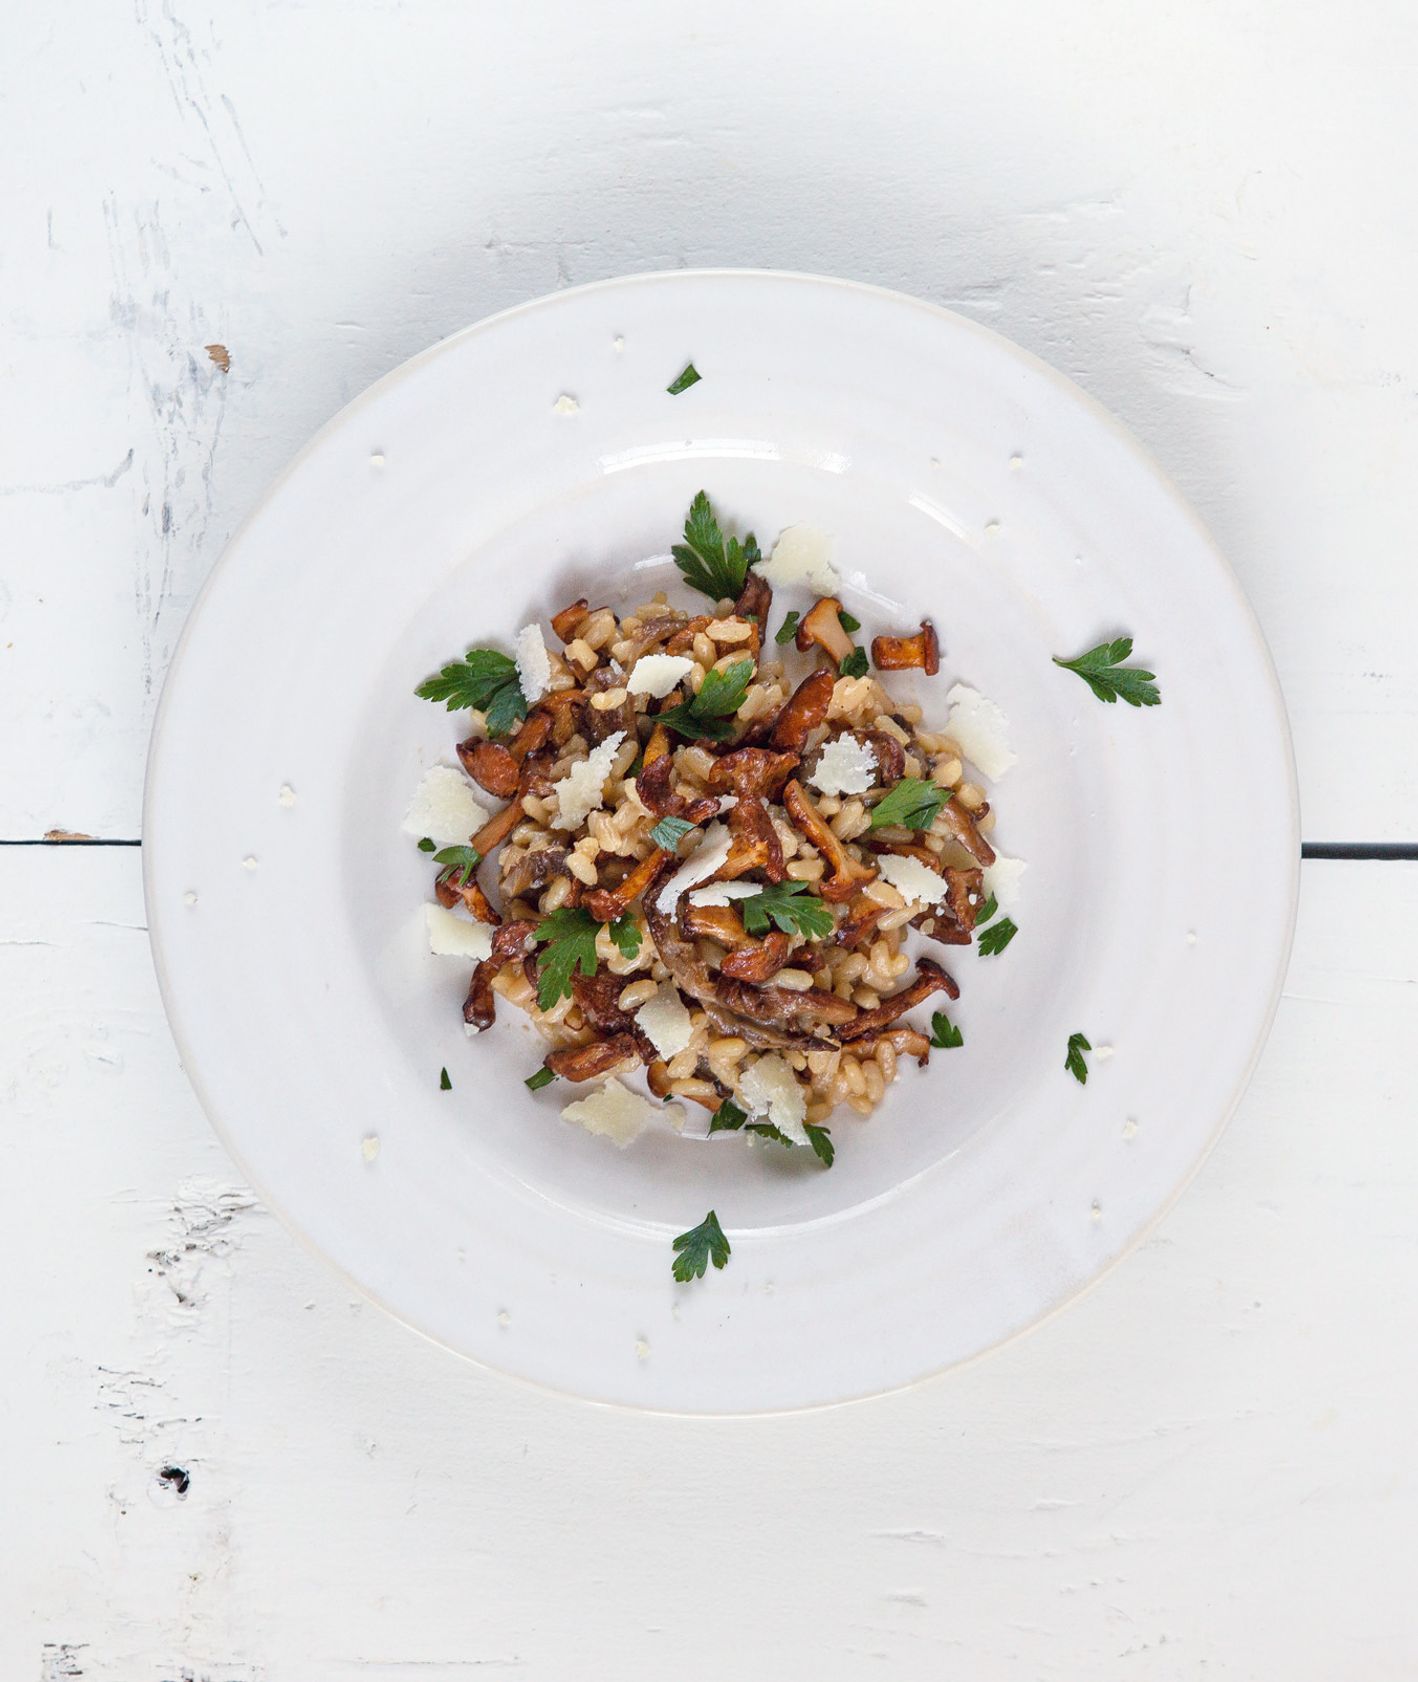 Przepis na risotto z grzybami. Risotto z kurkami, borowikami i podgrzybkami - PRZEPIS (fot. Jakub Stanek)